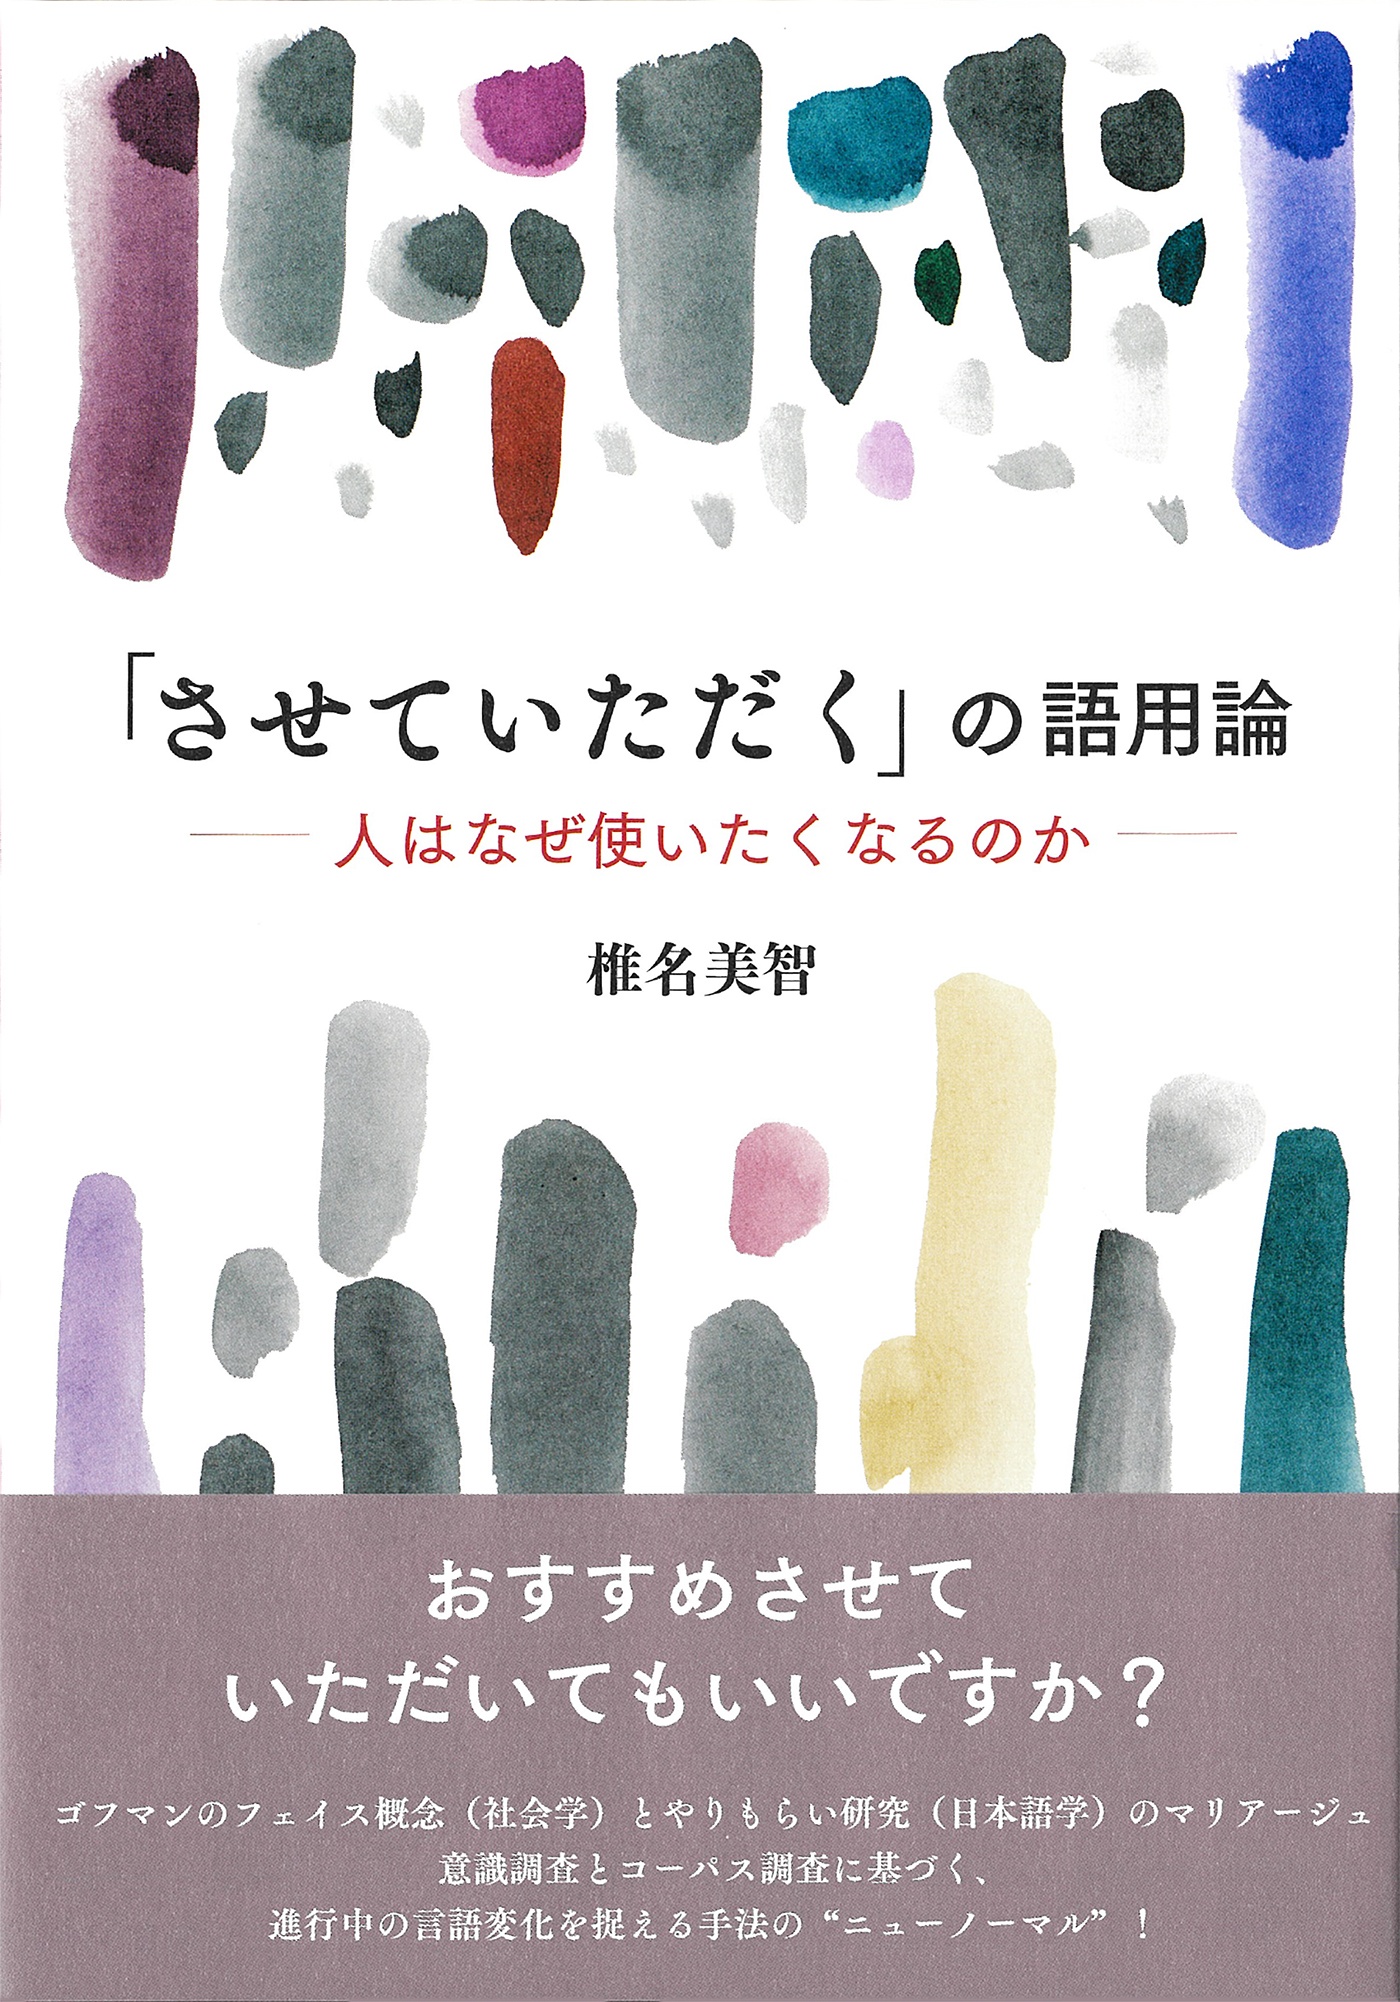 椎名美智 おすすめの新刊小説や漫画などの著書 写真集やカレンダー Tsutaya ツタヤ